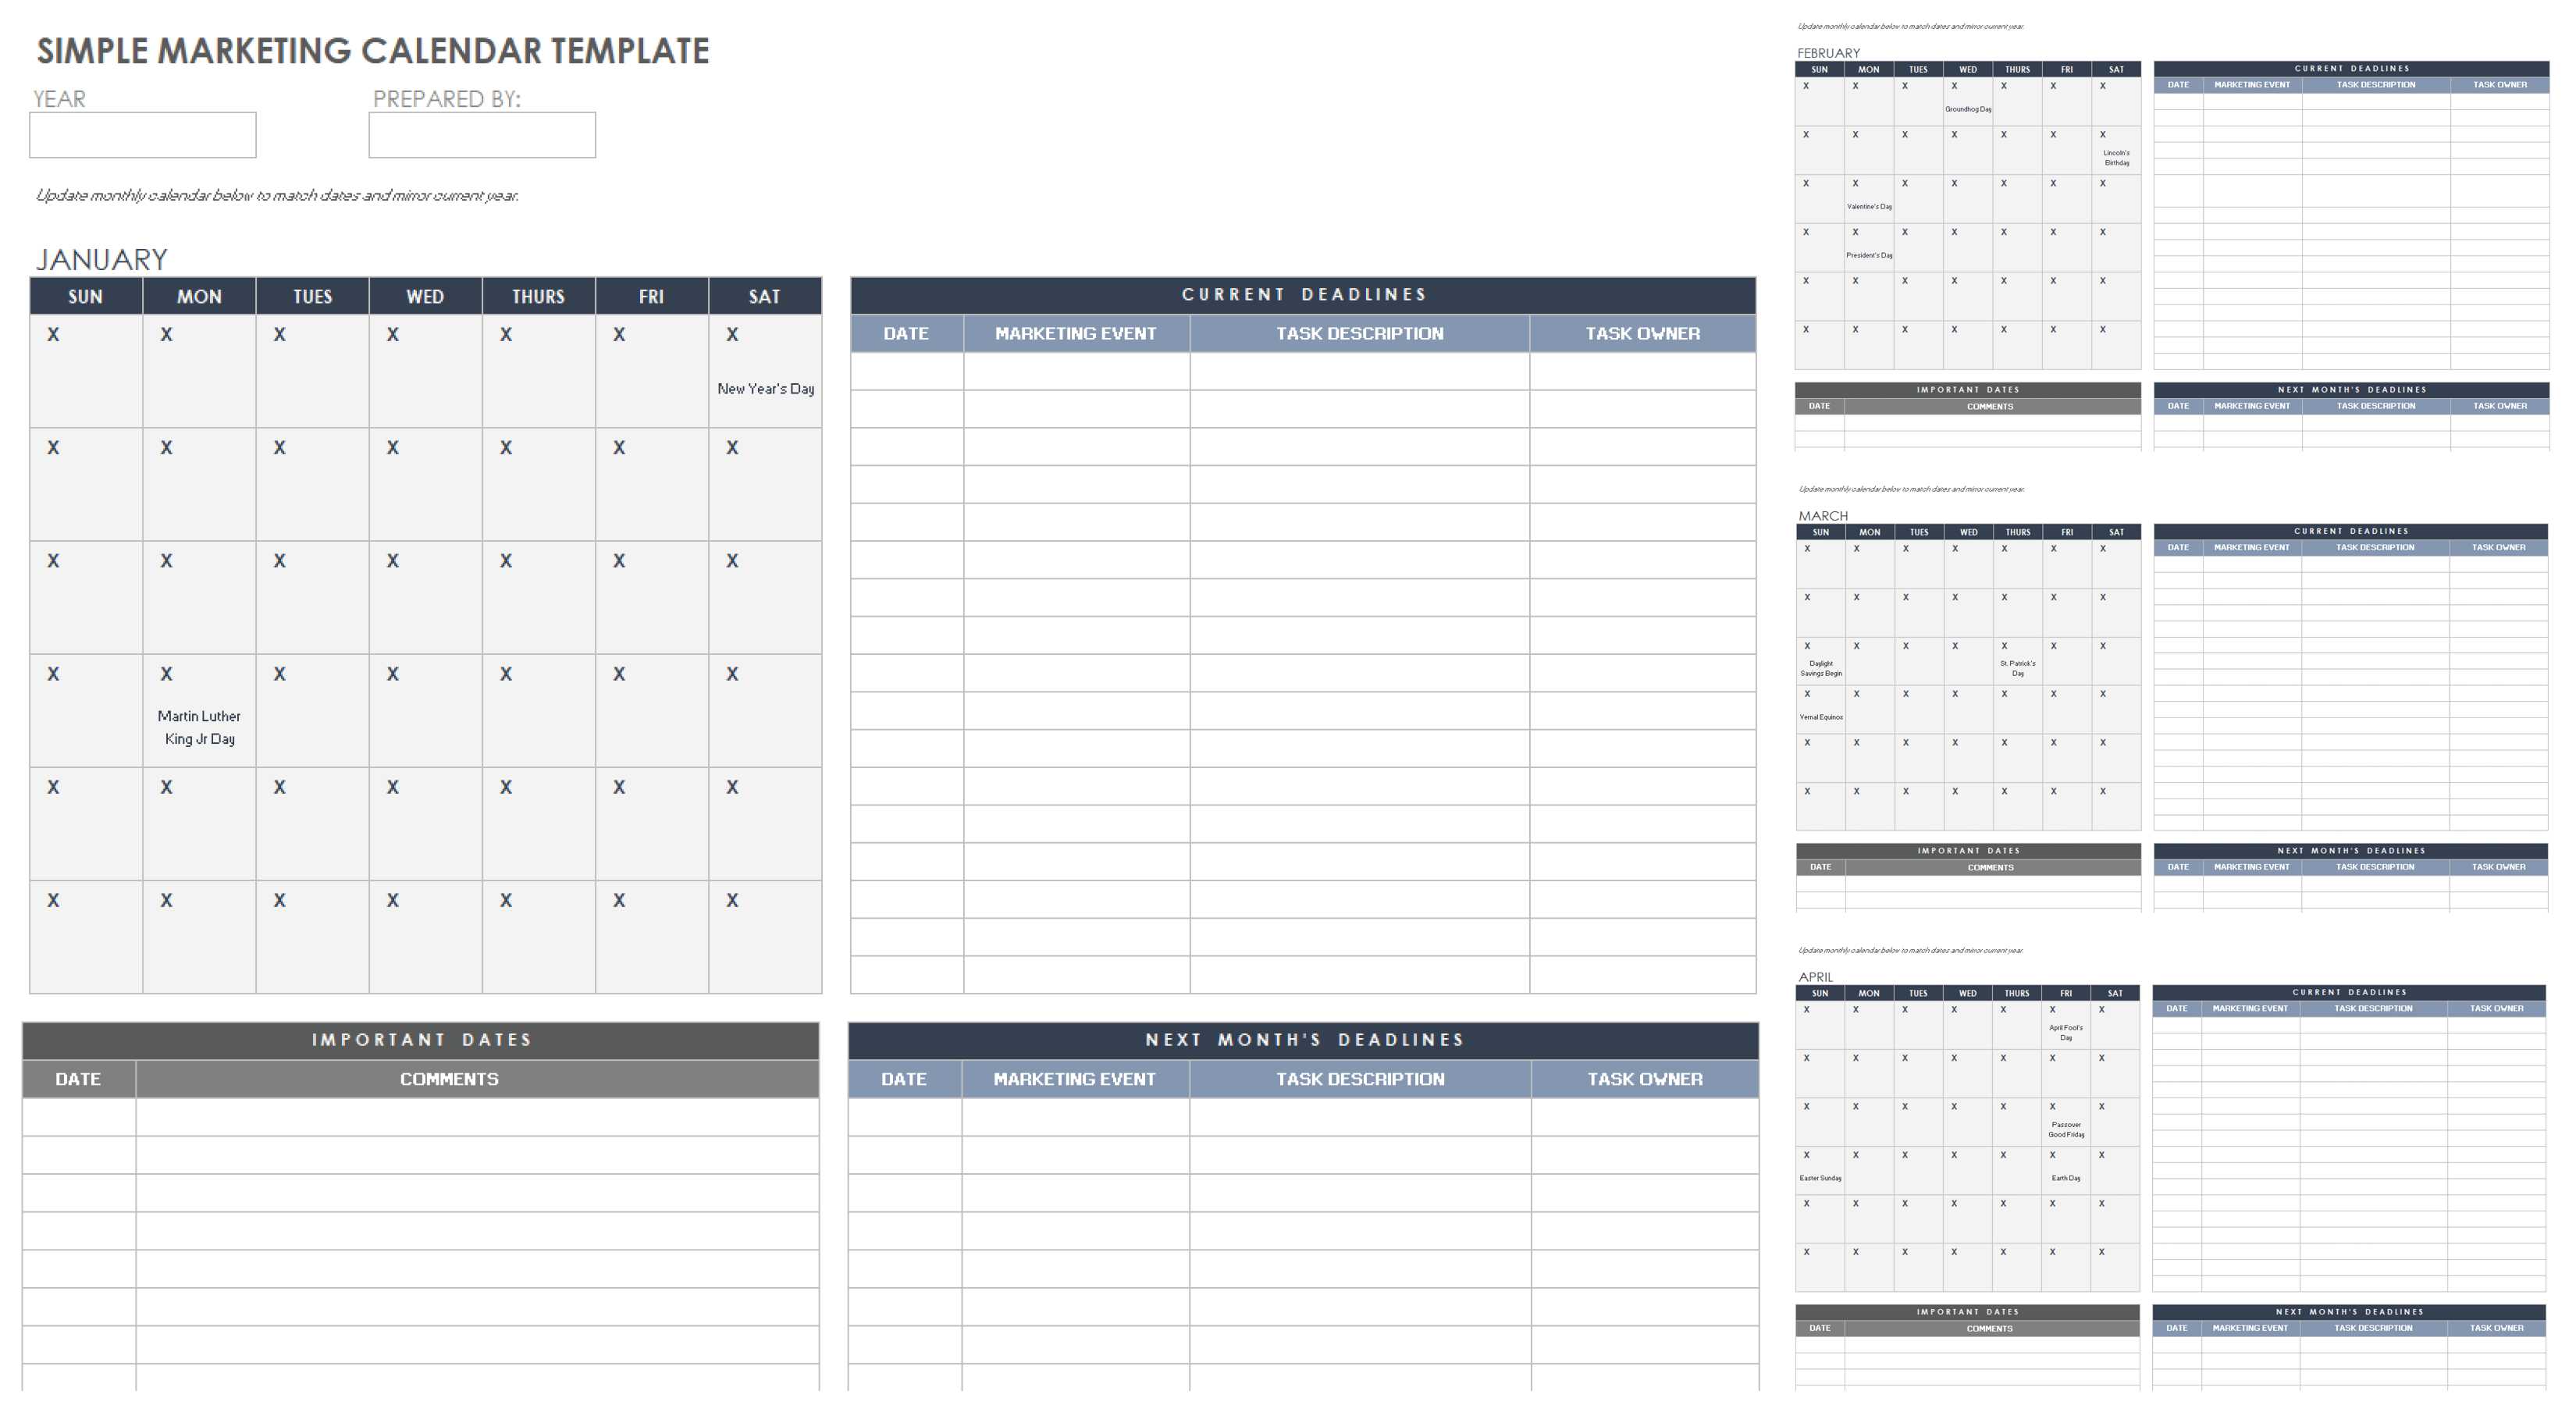 简单营销日历模板